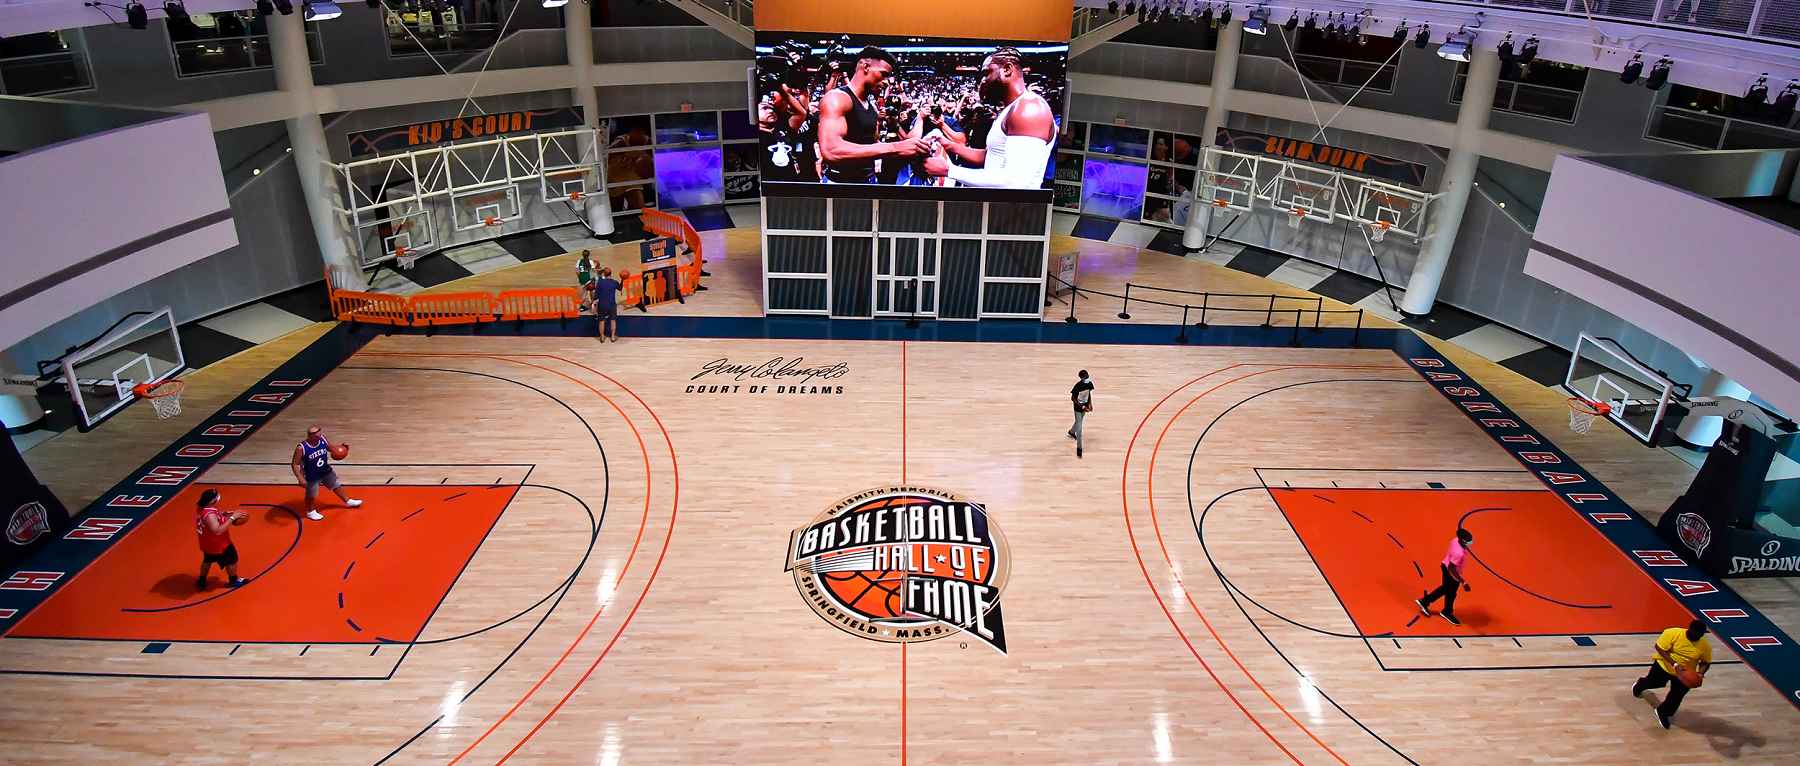 Naismith Memorial Basketball Hall of Fame in Springfield, MA - Photo Credit Bob Blanchard